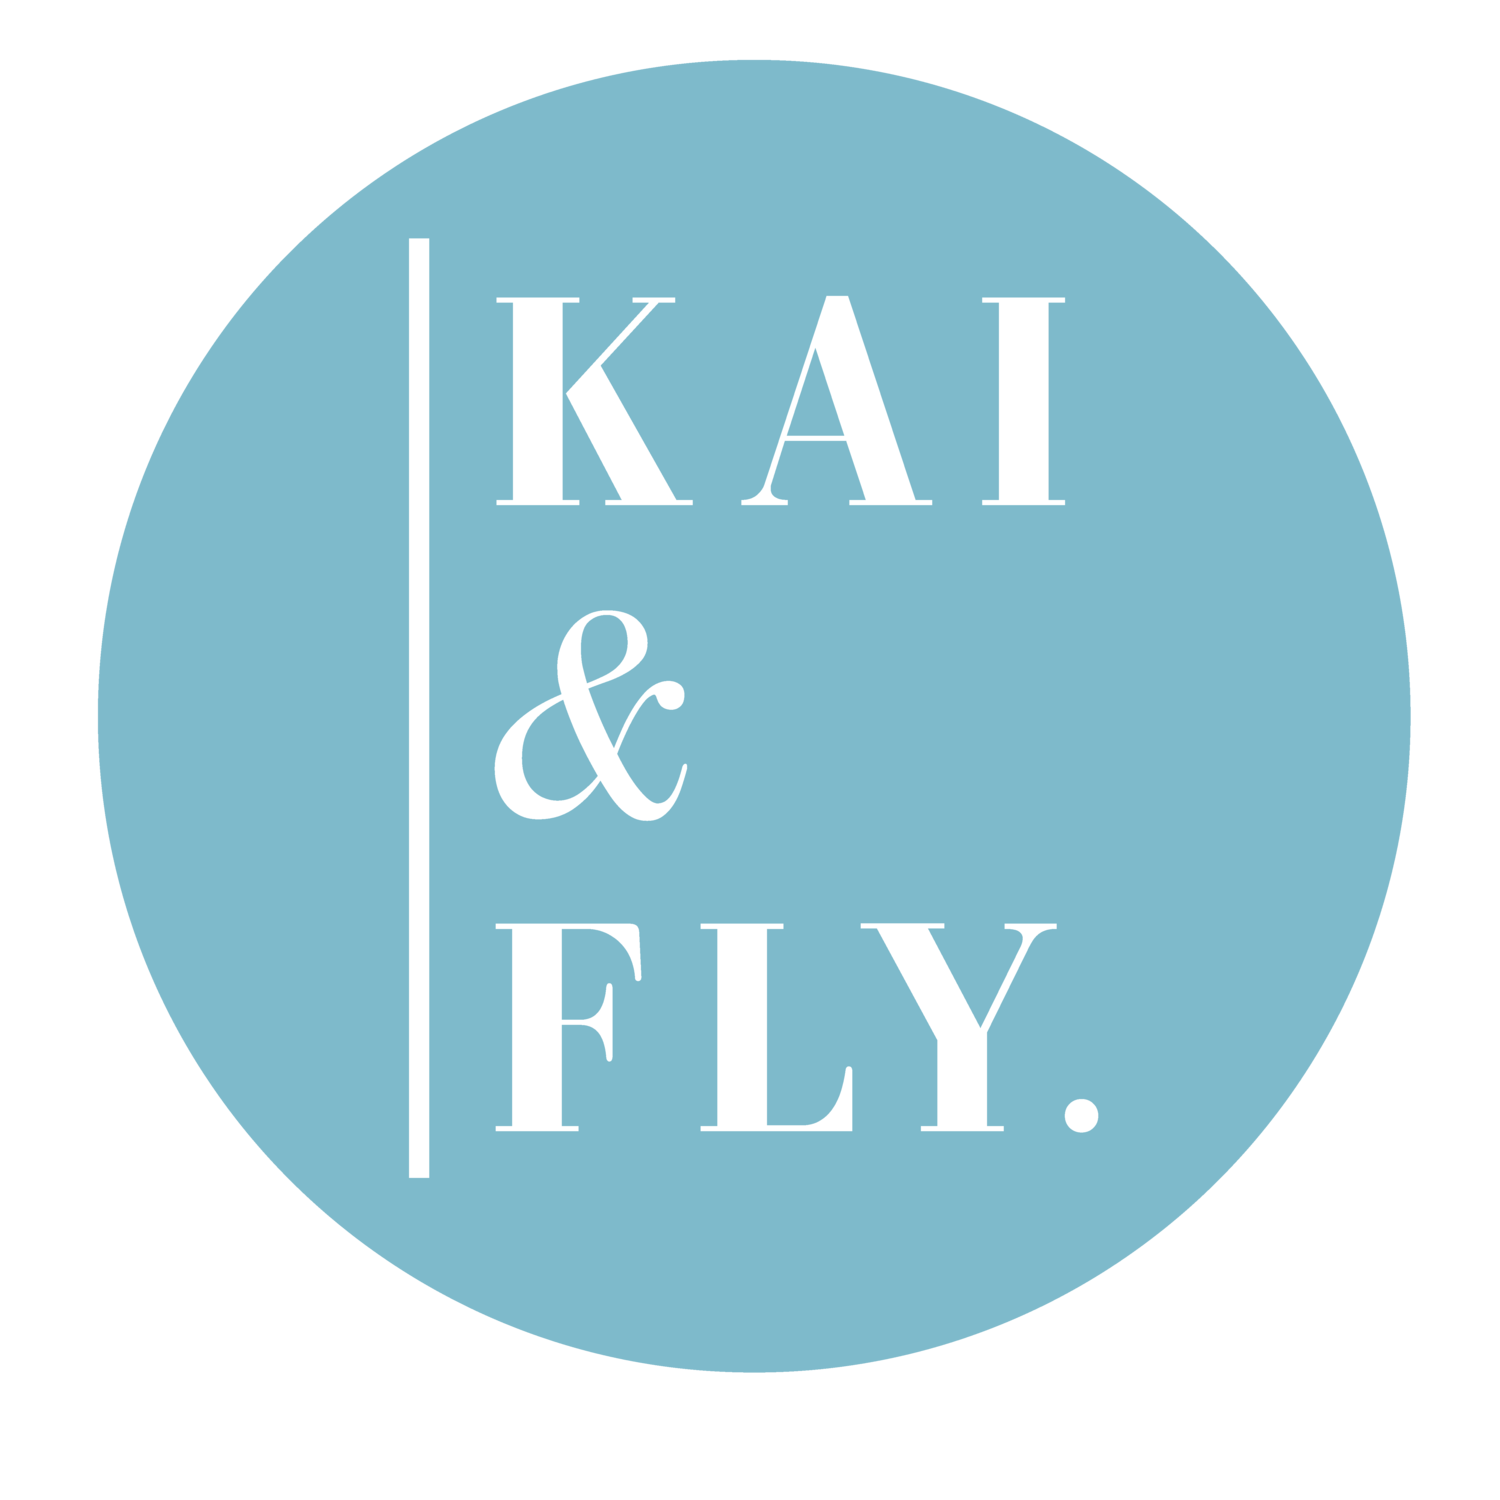 Kai & Fly